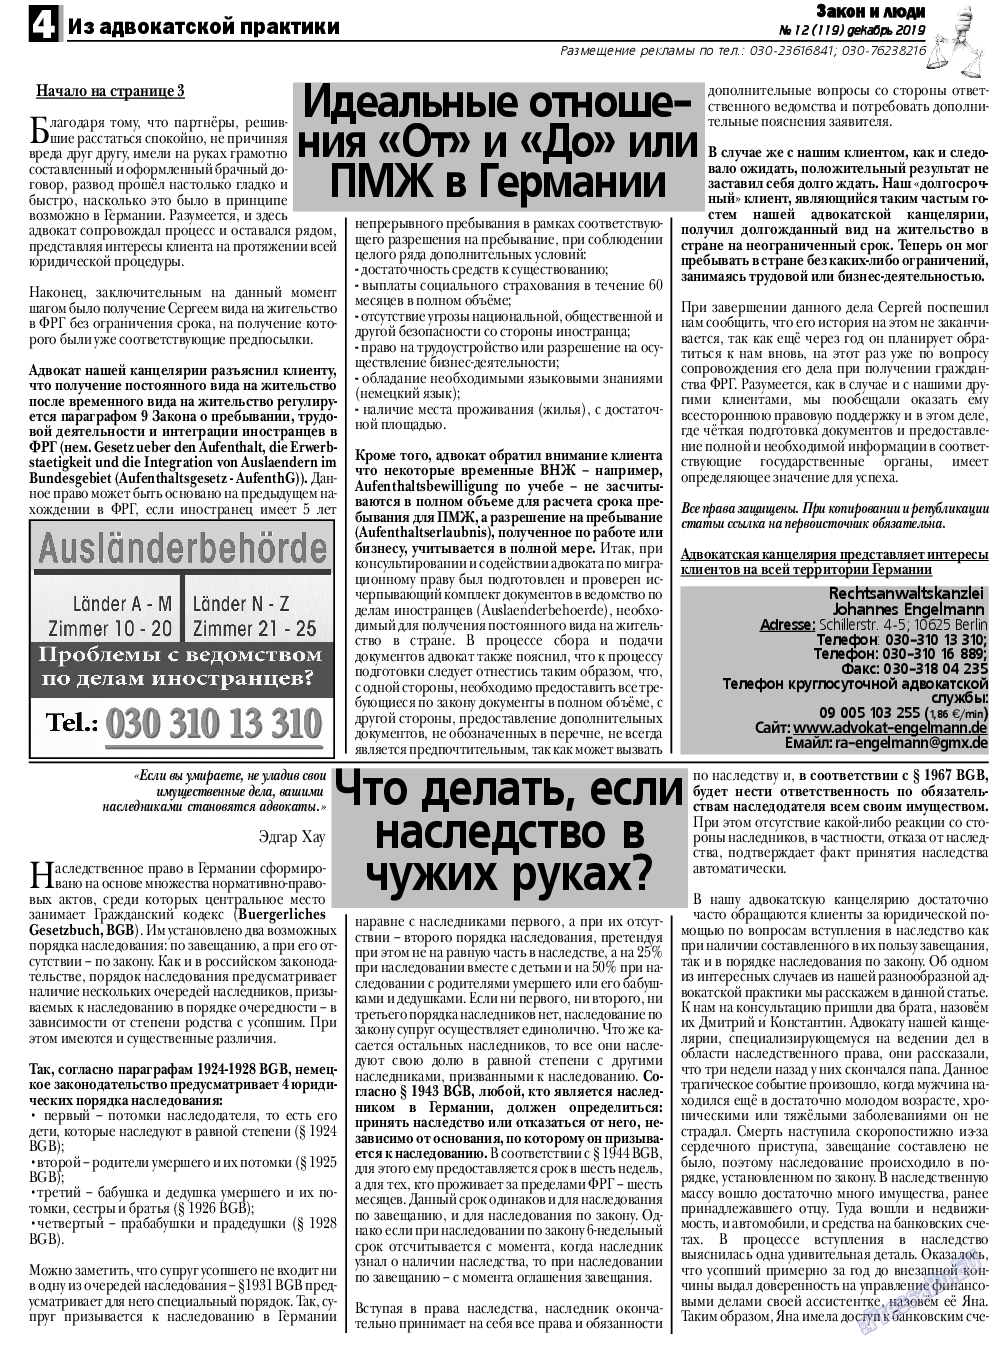 Закон и люди, газета. 2019 №12 стр.4